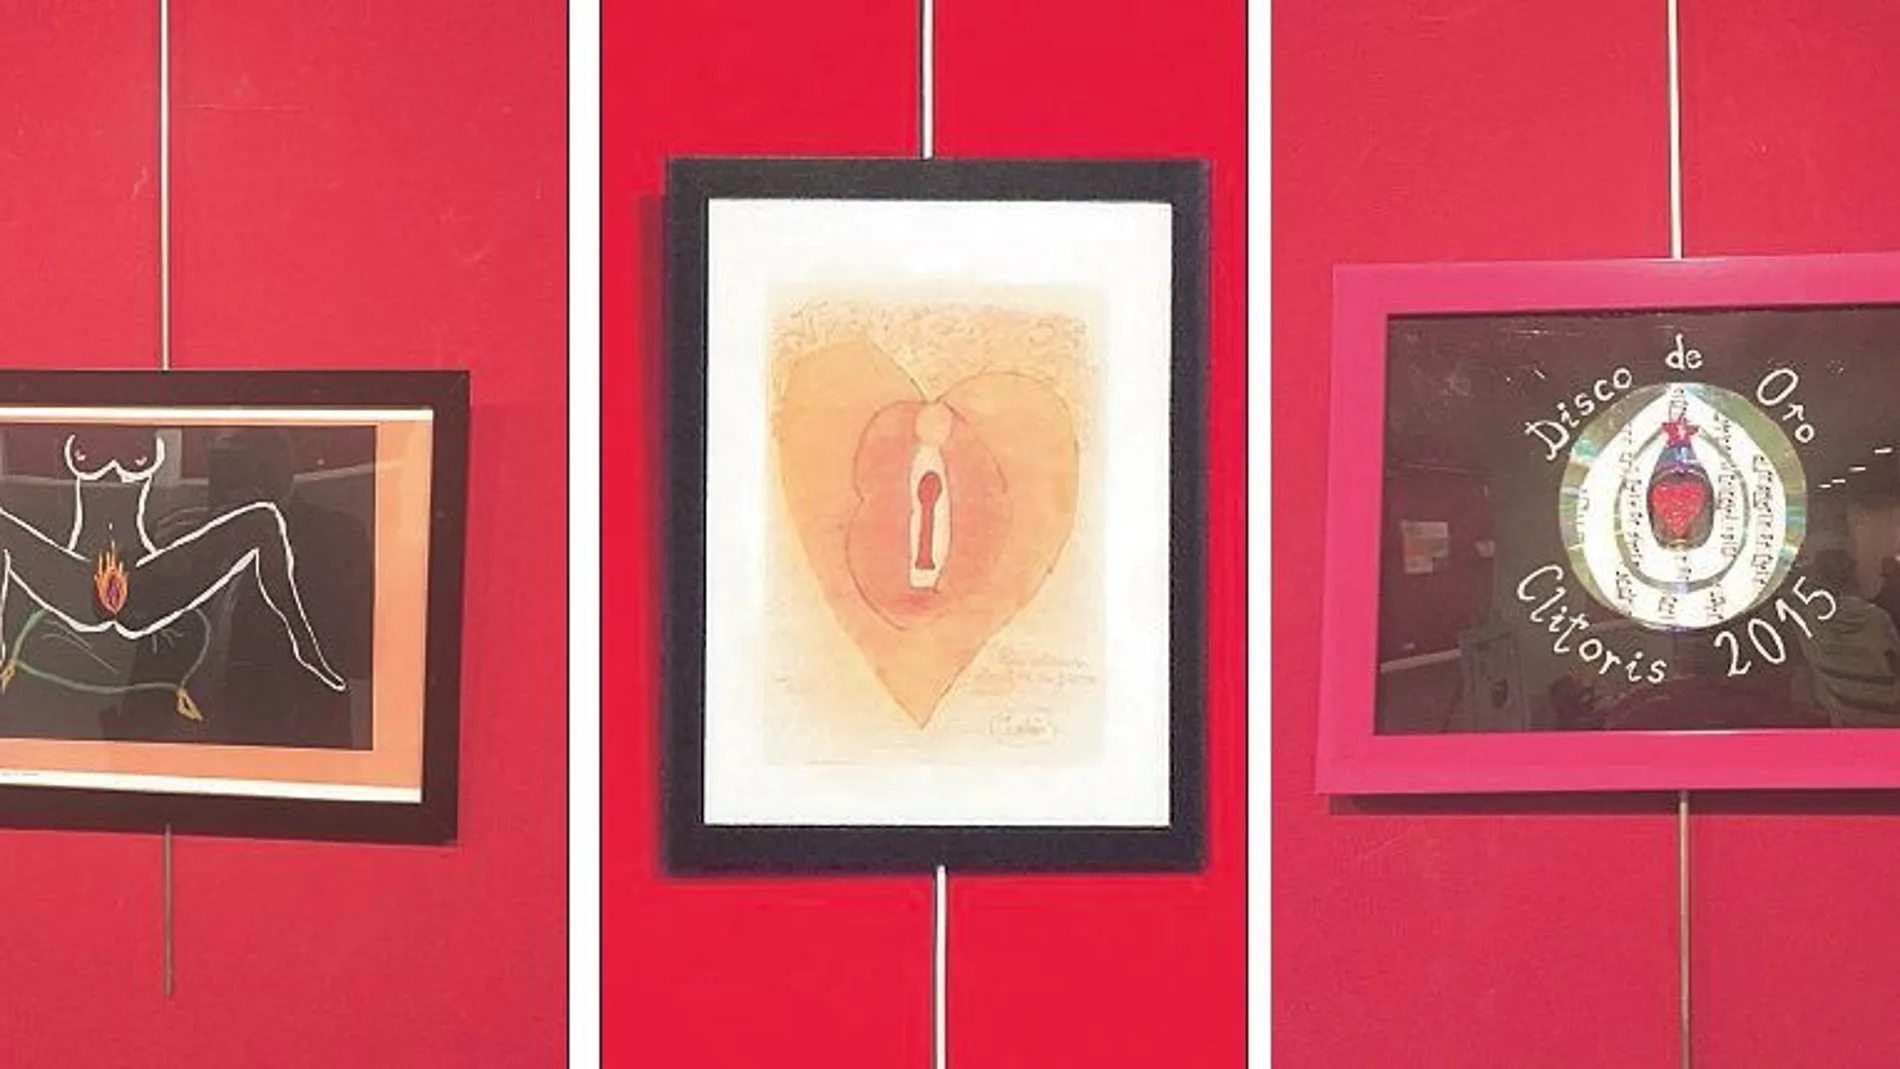 «GenitArte», que es el título de la muestra que hasta ayer se expuso en el centro cultural Eduardo Úrculo de Tetuán, exhibe pinturas y esculturas sobre los órganos genitales